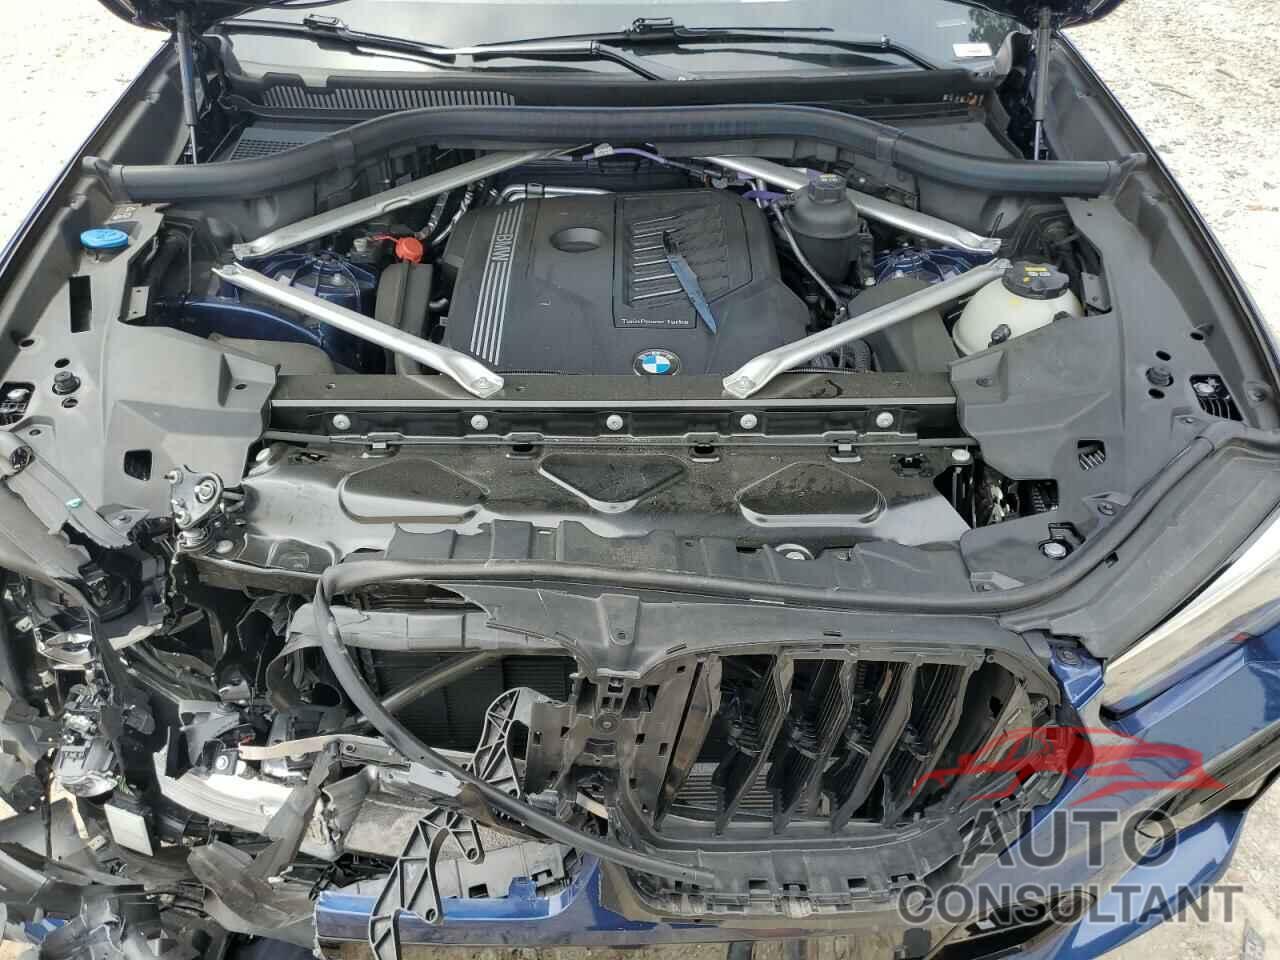 BMW X6 2022 - 5UXCY6C00N9N18910